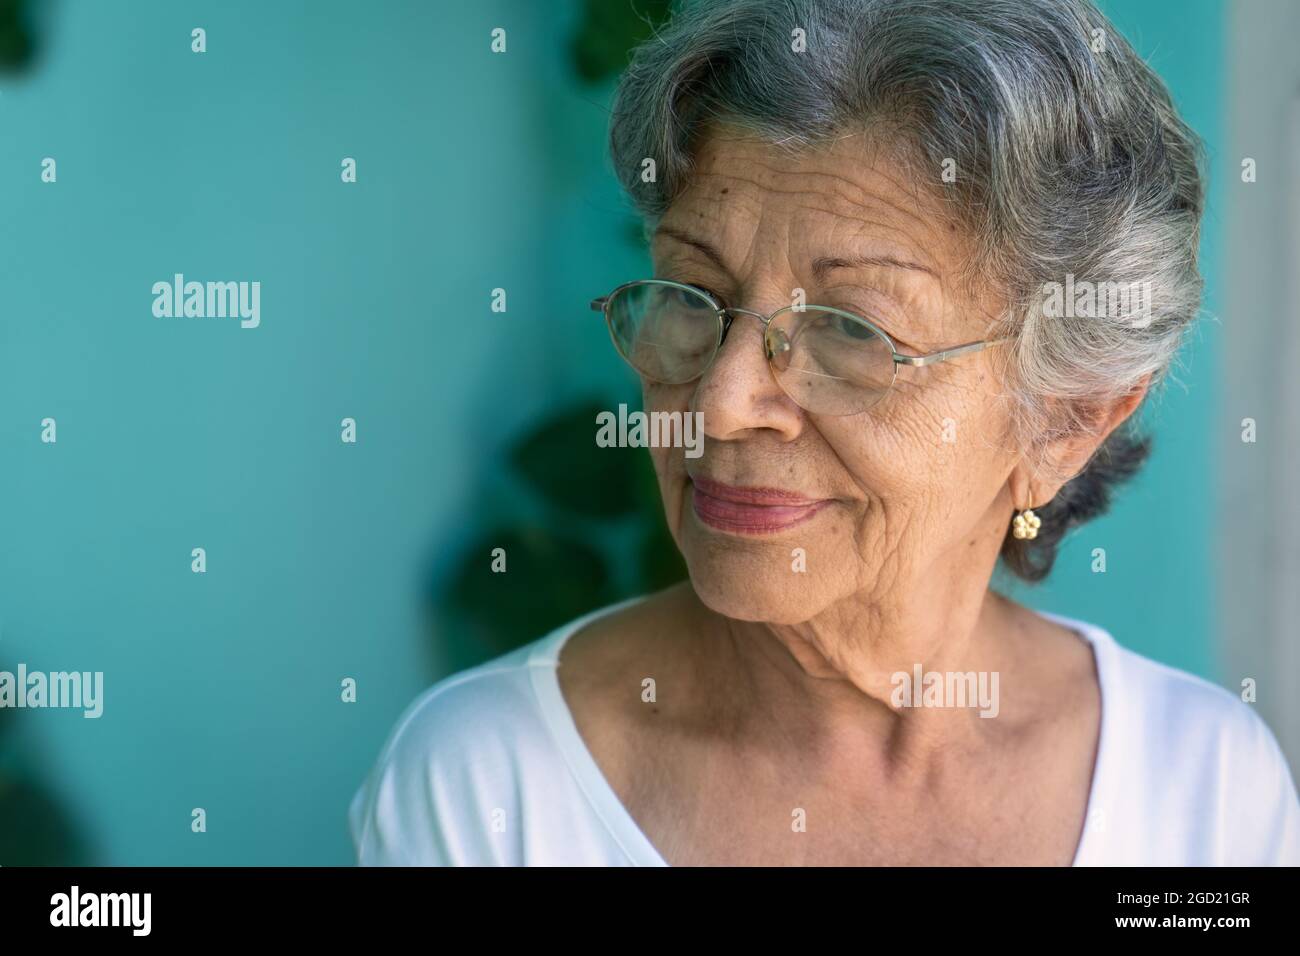 Foto einer alten Frau mit Brille. Ihre Haut ist zerknittert und ihre Haare sind grau Stockfoto